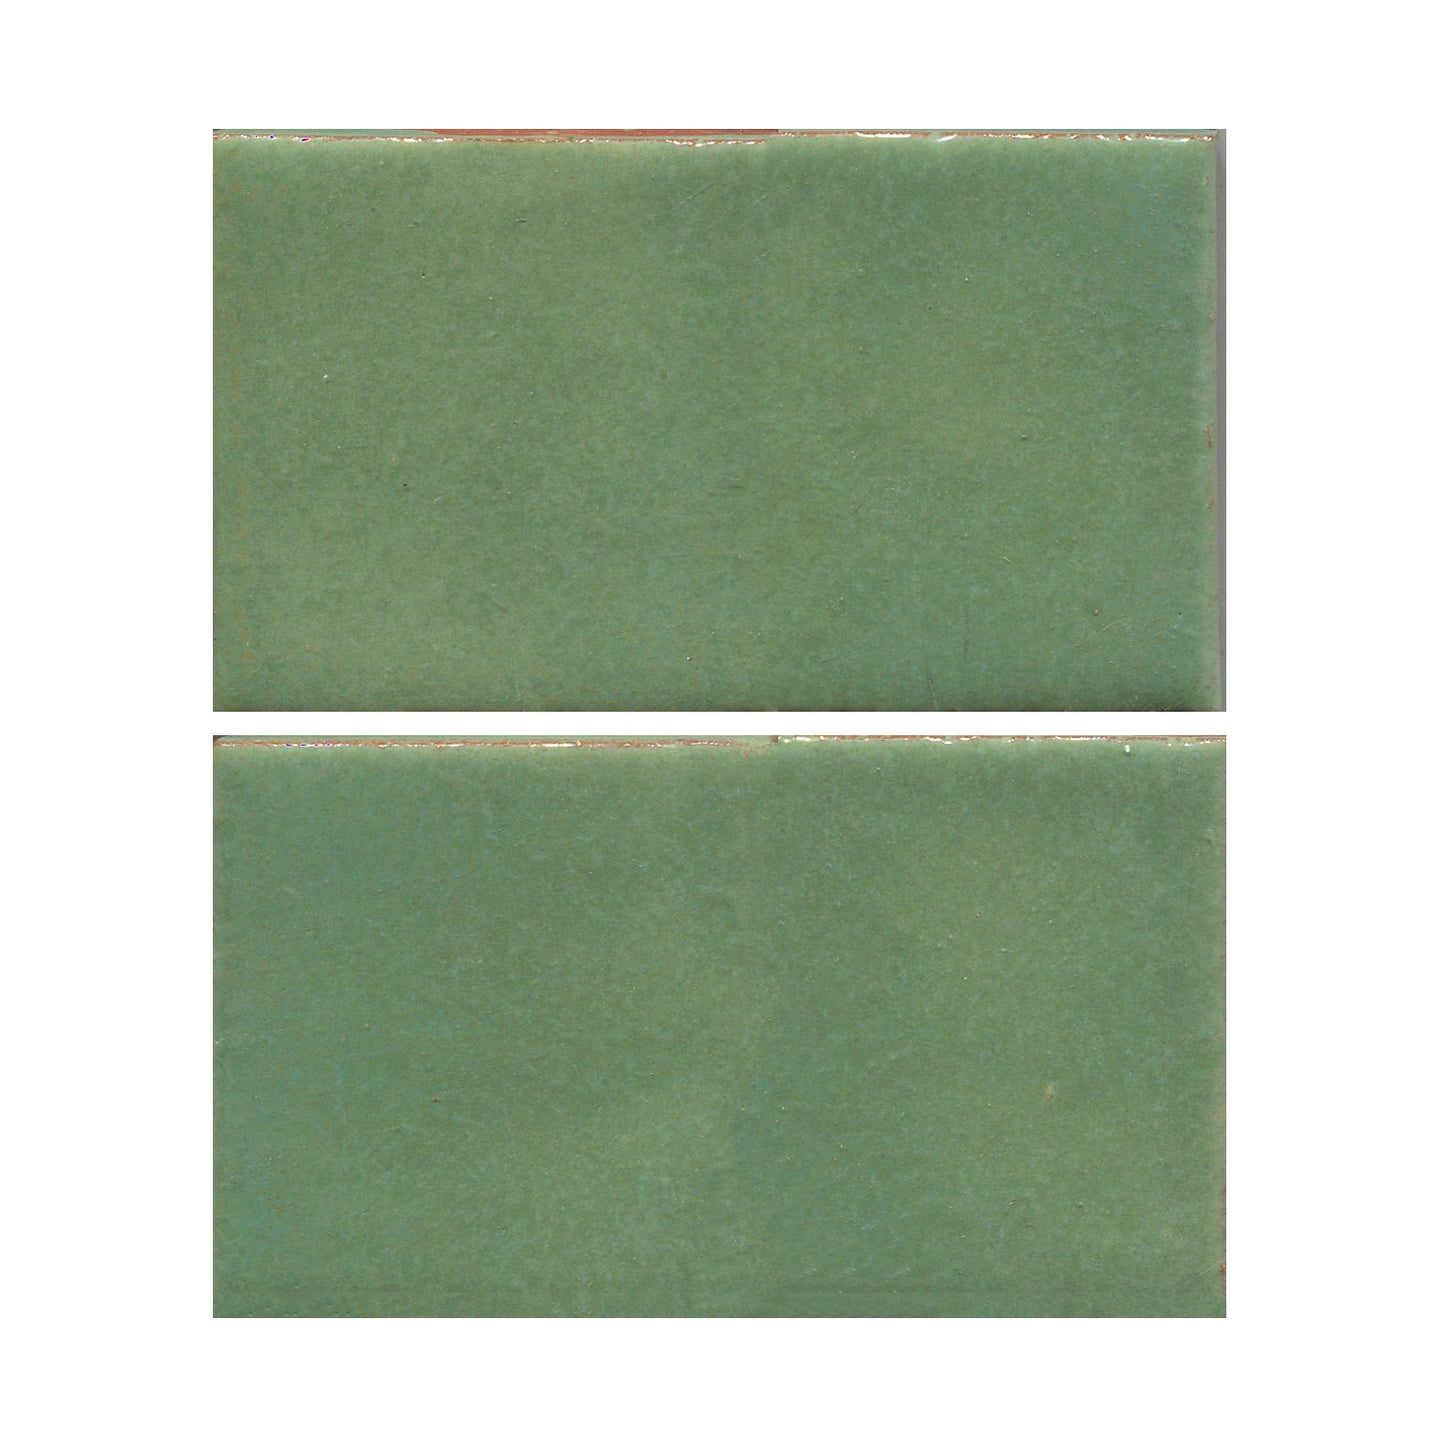 Wasabi green 4x6 field tile